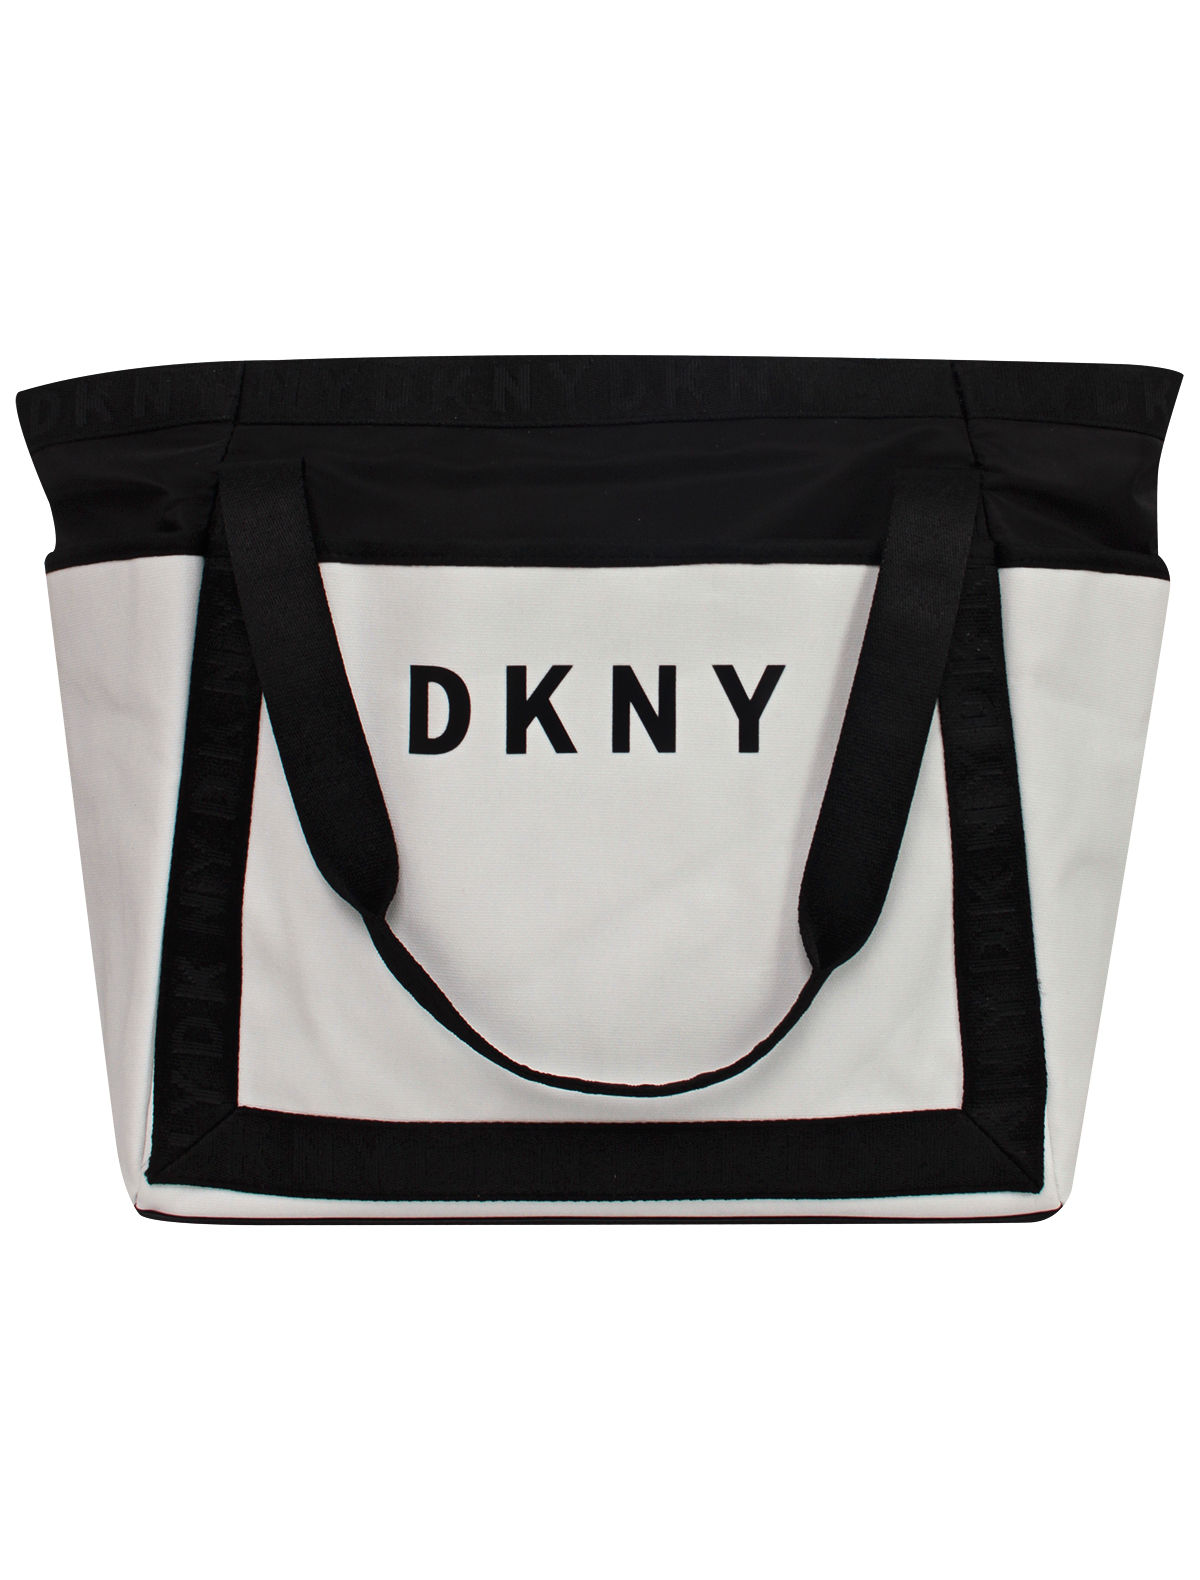 Сумка DKNY черного цвета